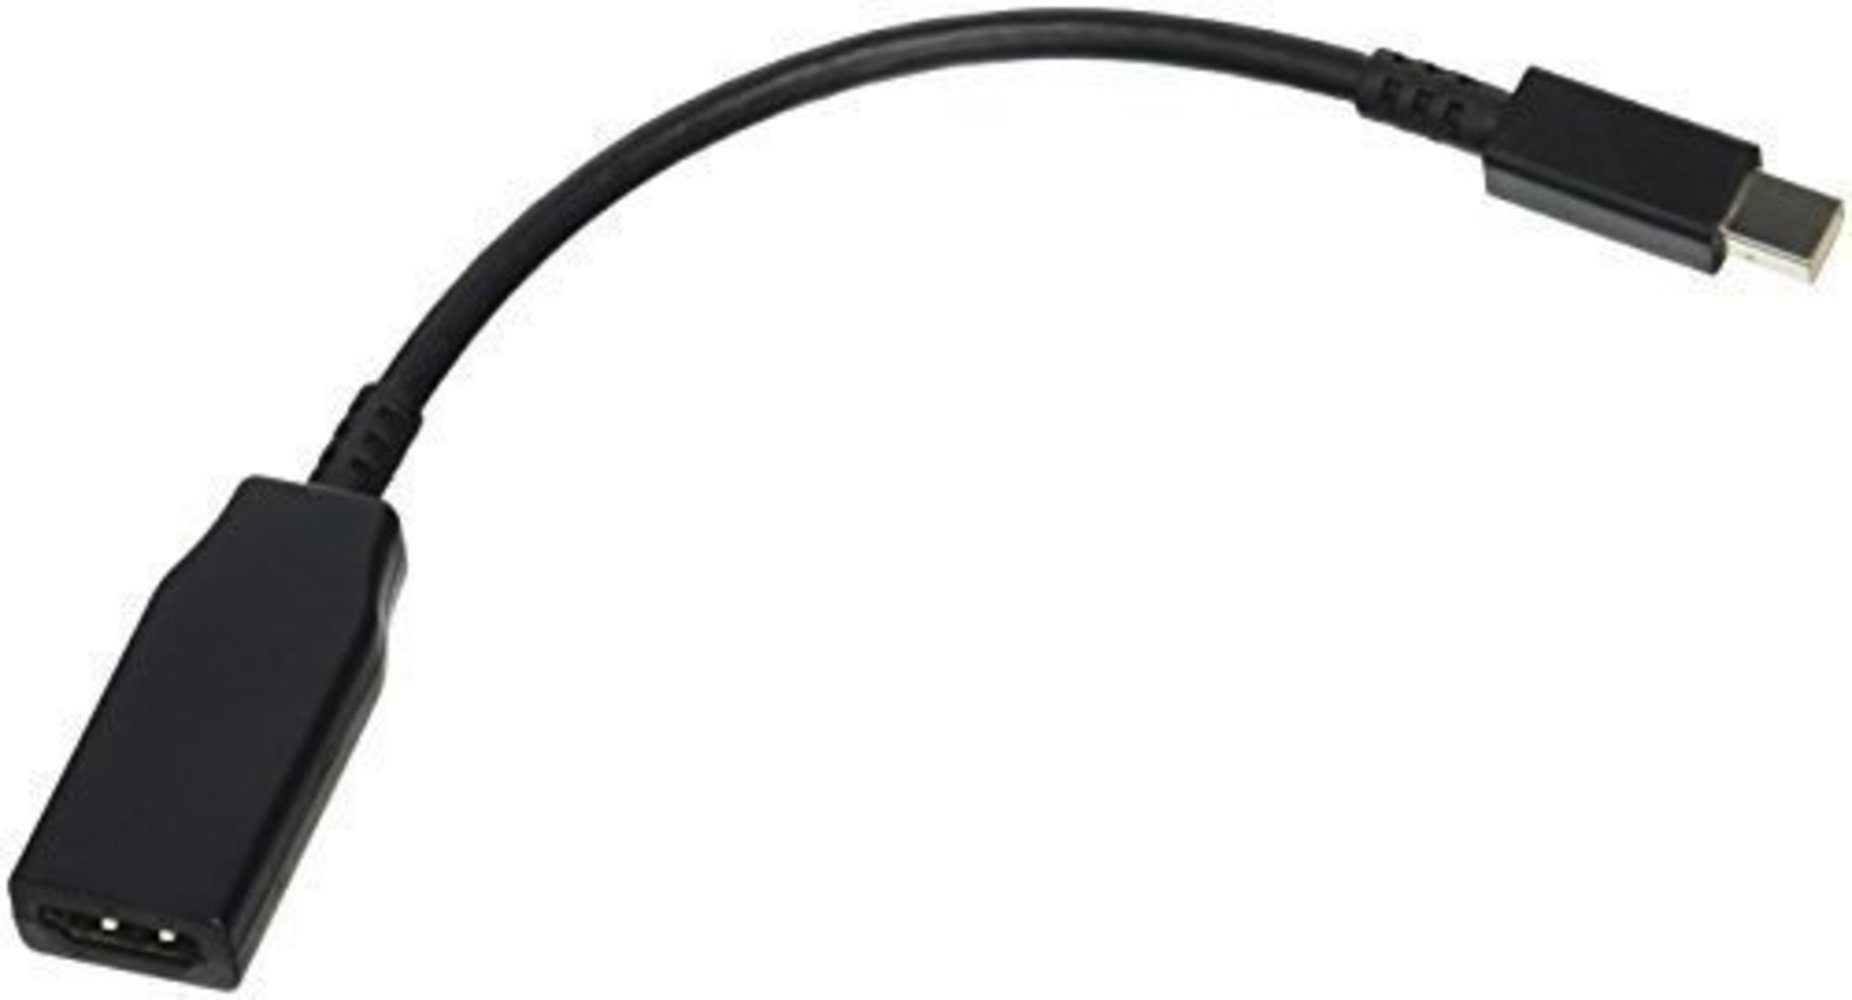 Lenovo MINIDISPLAYPORT TO HDMI Kabel - Hohe Qualität und einfache Verbindung